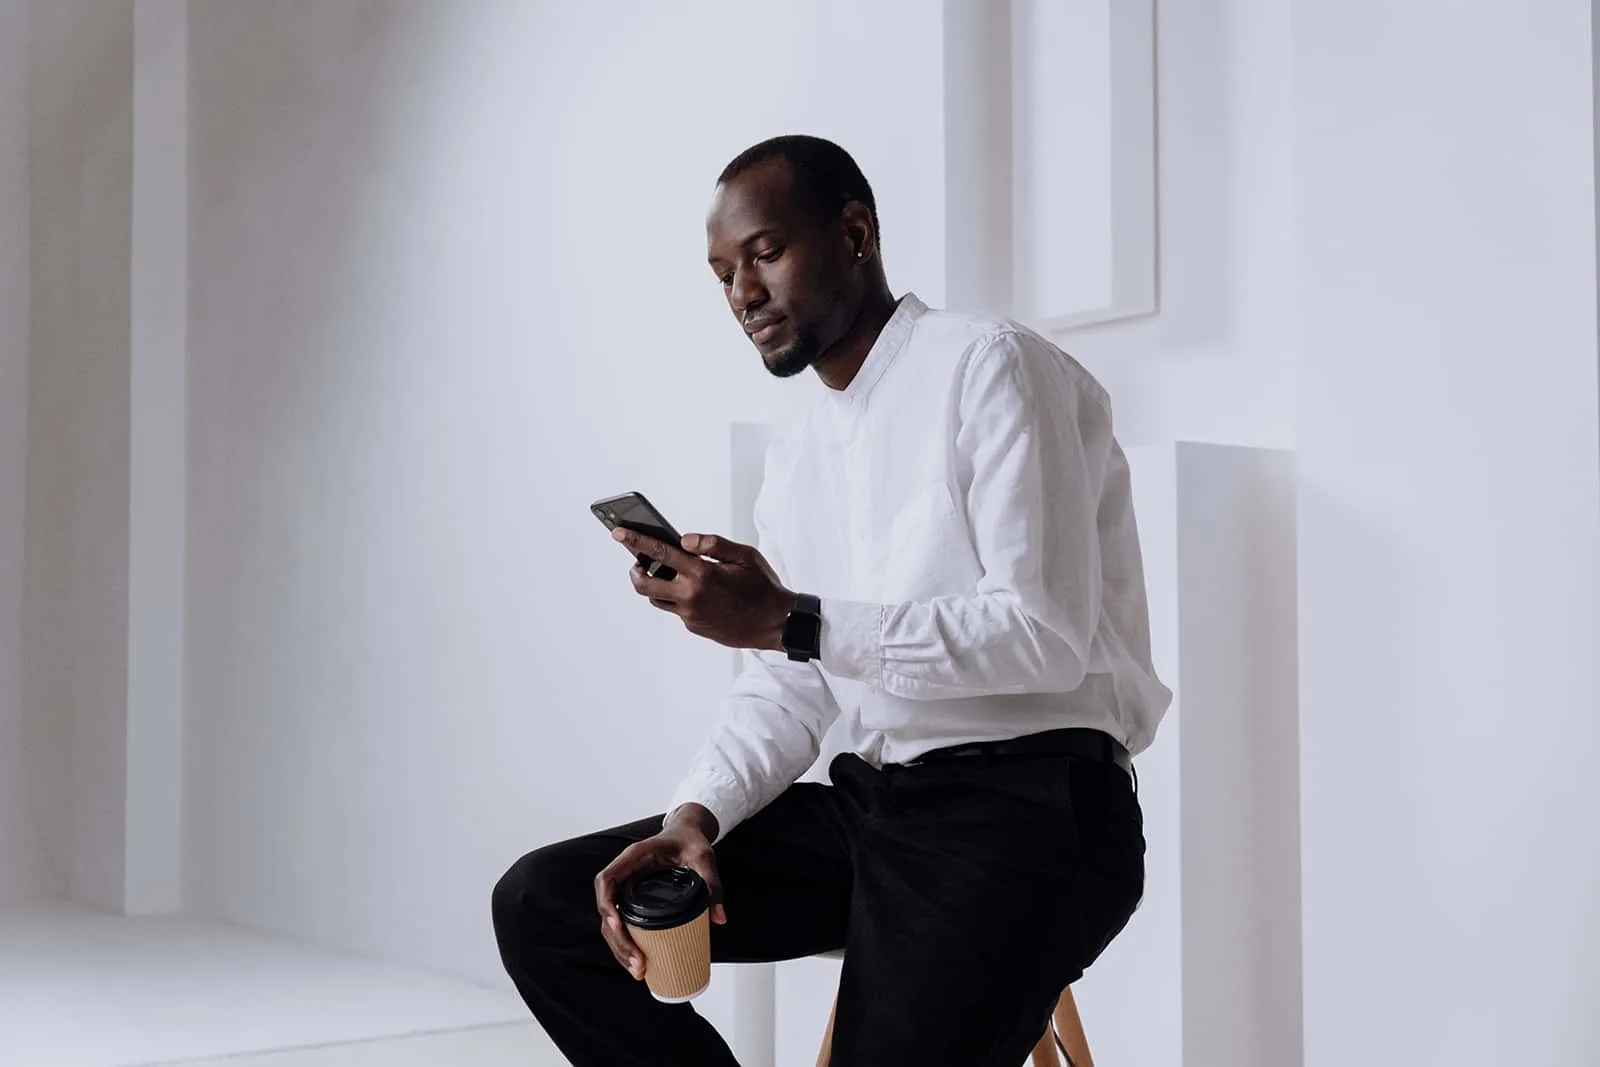 Ein selbstbewusster Mann, der auf seinem Smartphone tippt, während er auf dem Stuhl sitzt